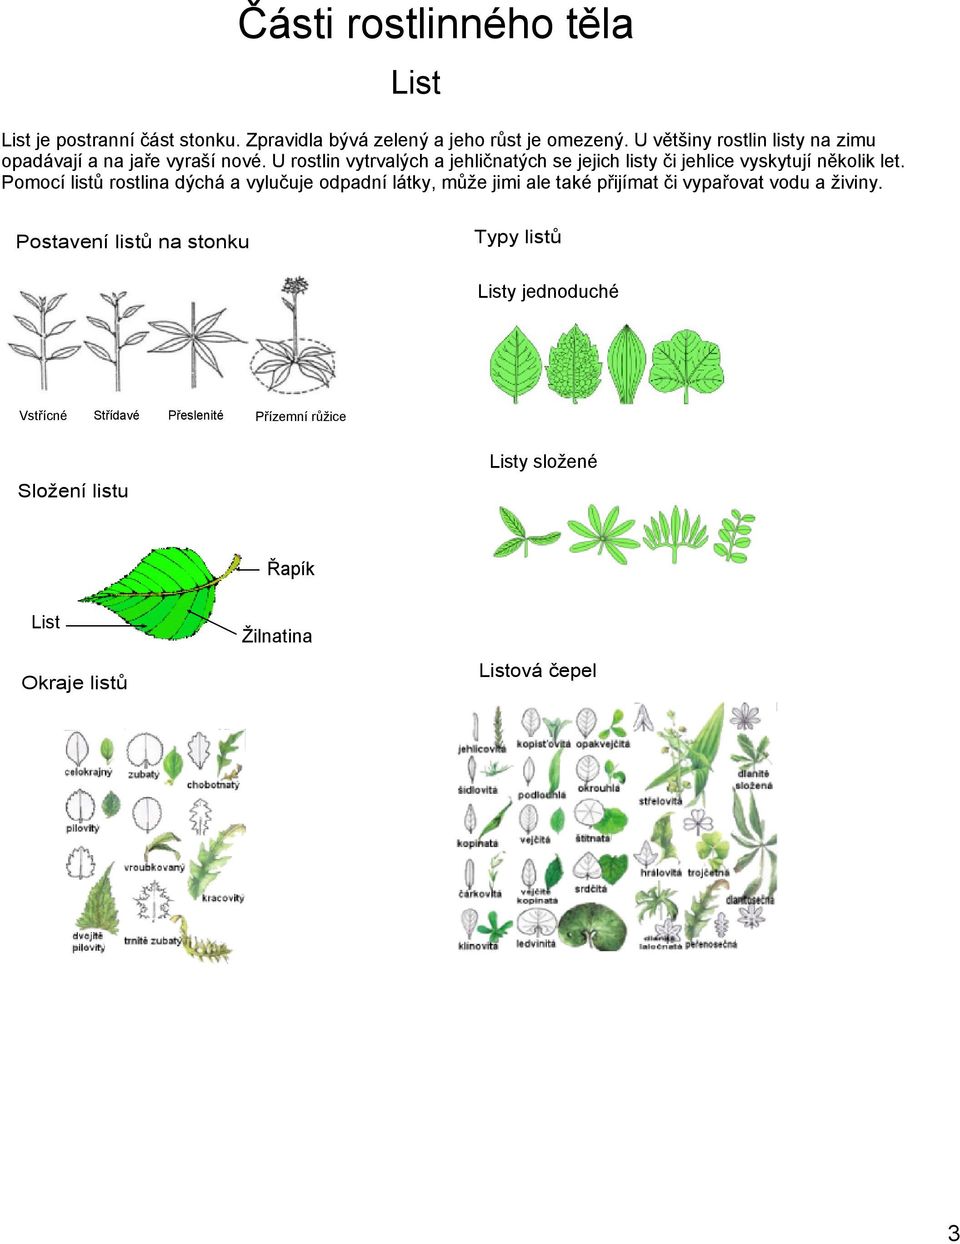 U rostlin vytrvalých a jehličnatých se jejich listy či jehlice vyskytují několik let.